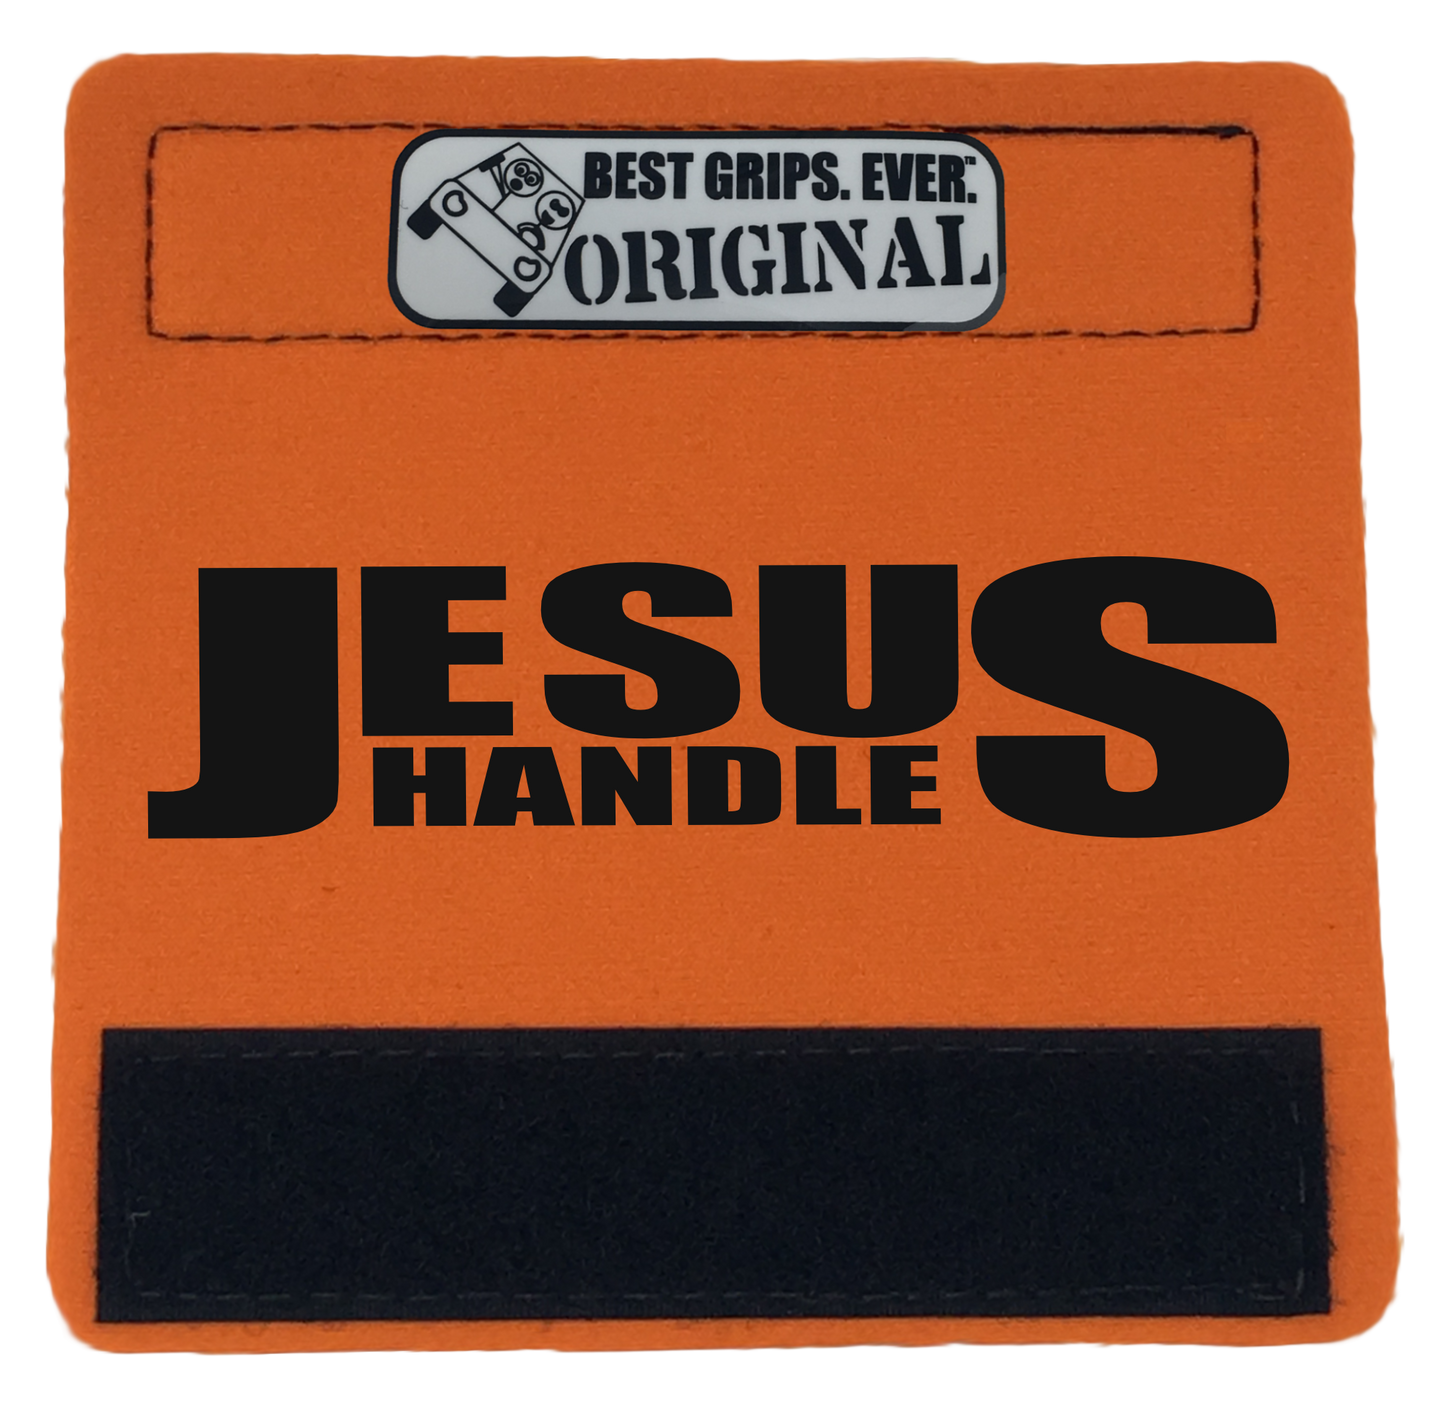 The Jesus Handle. - BEST GRIPS. EVER.®